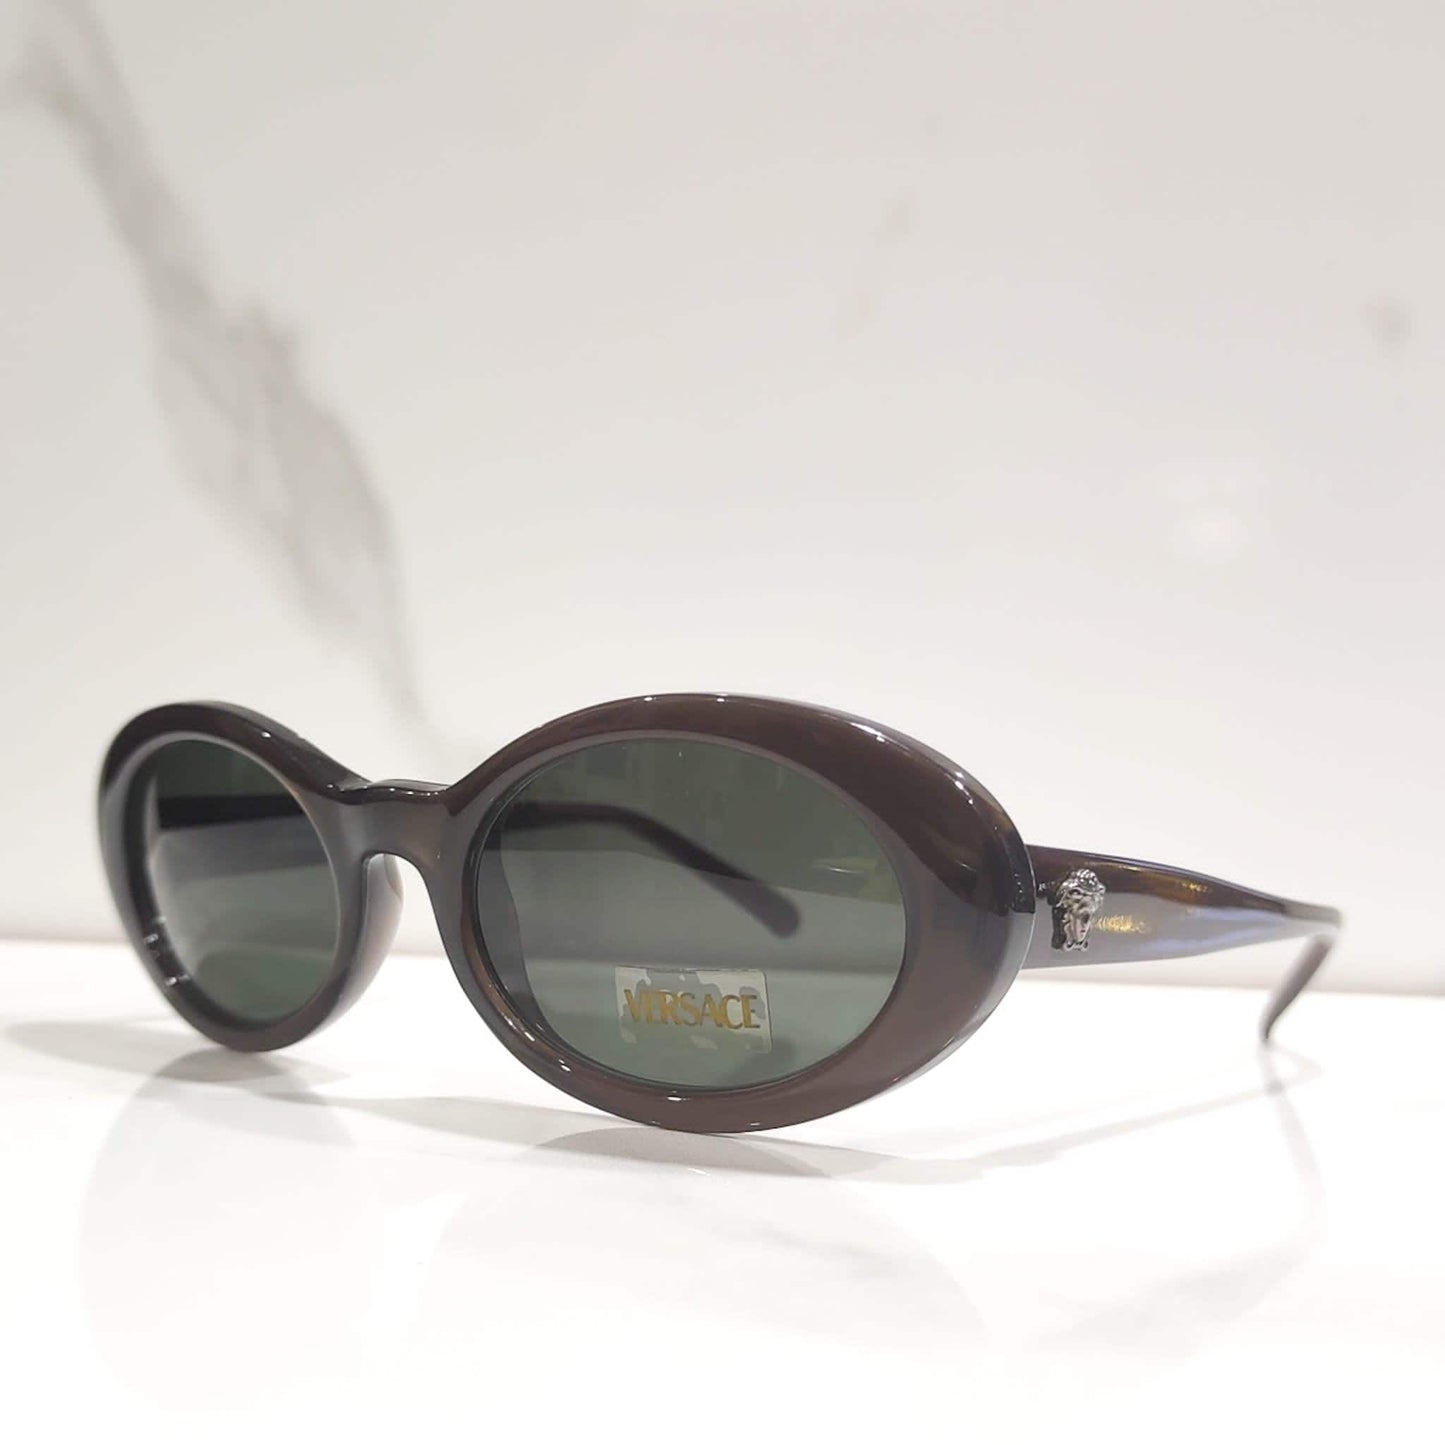 Gianni Versace 451 复古边框闪耀 90 年代眼镜